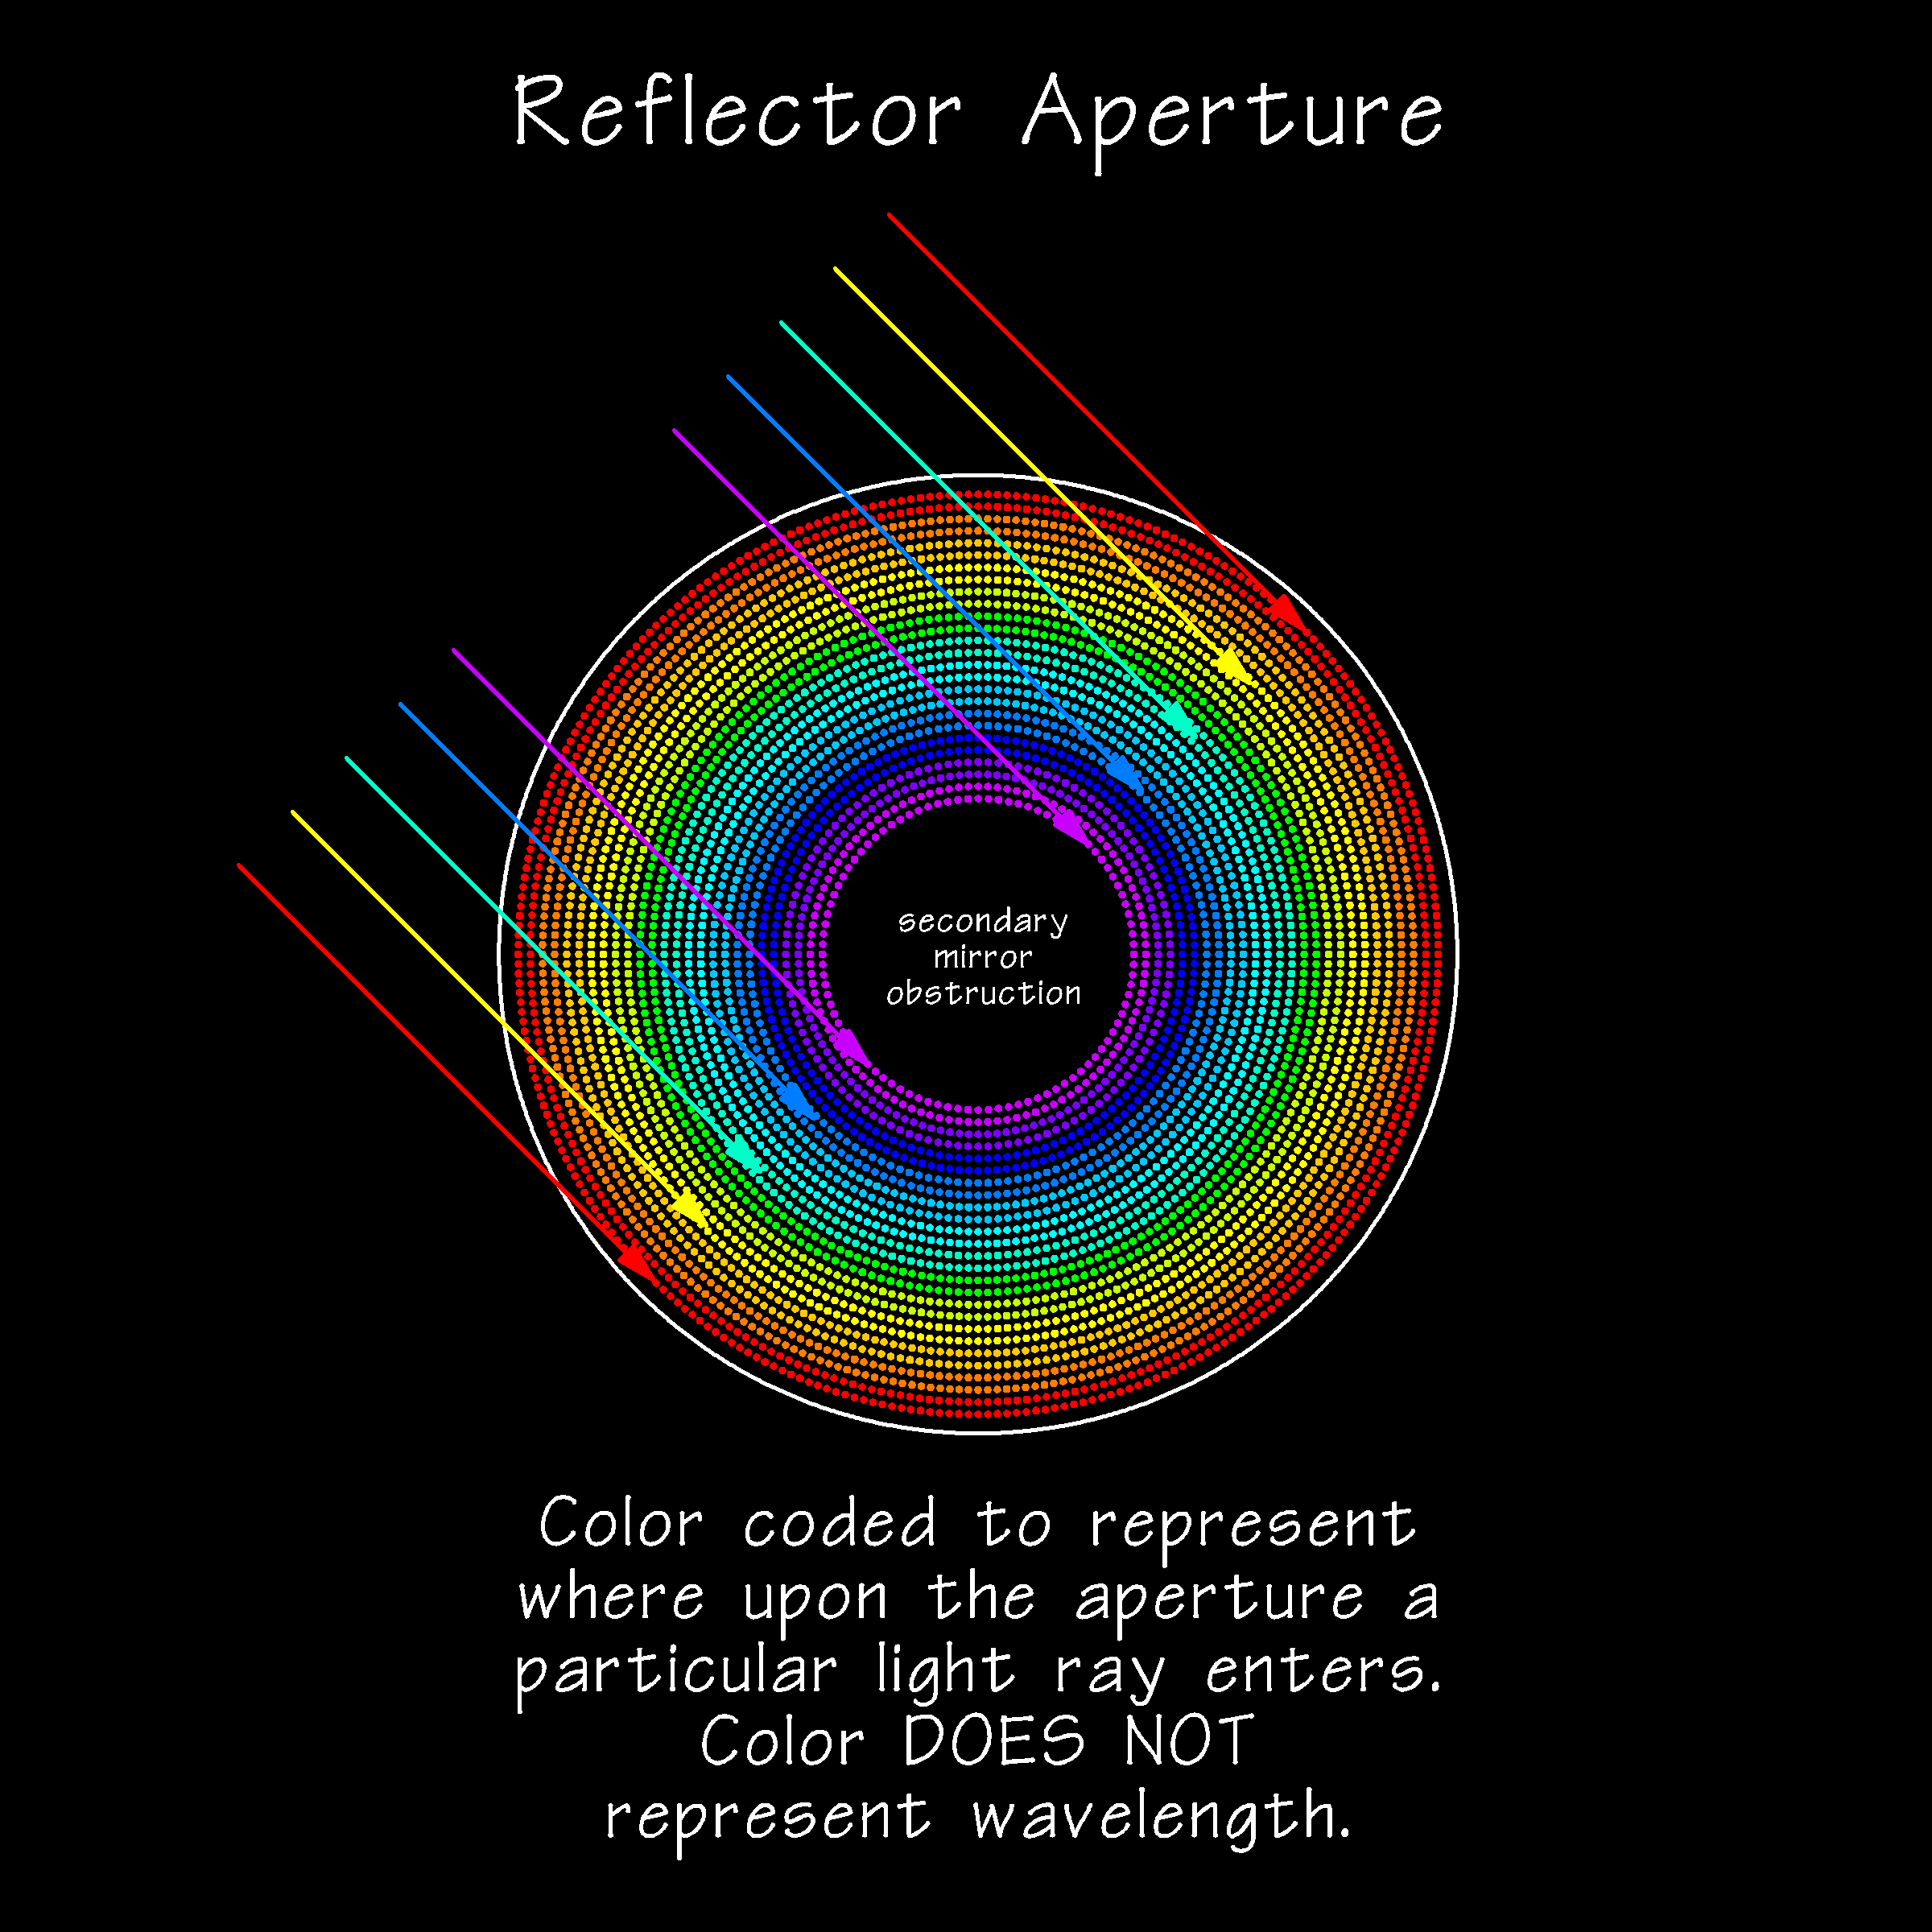 ReflectorApertureSpotDiagram